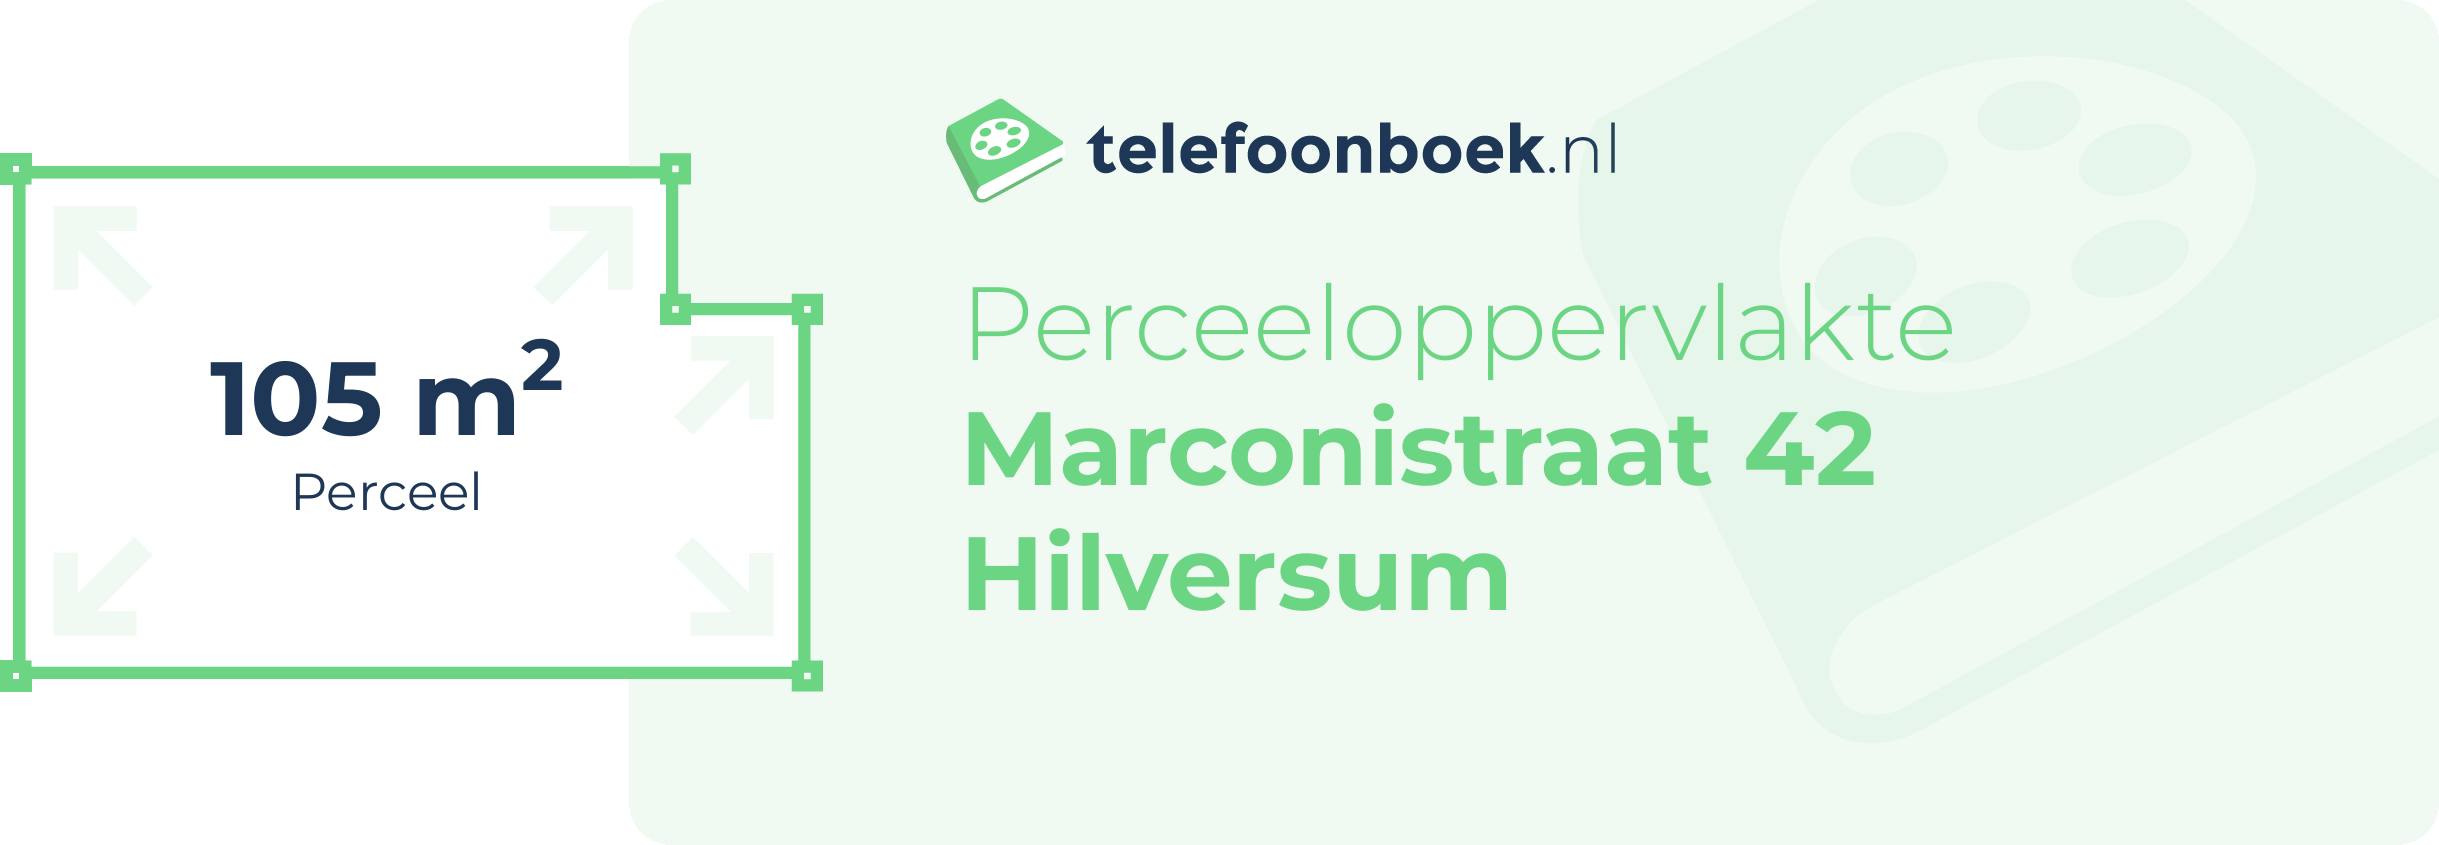 Perceeloppervlakte Marconistraat 42 Hilversum